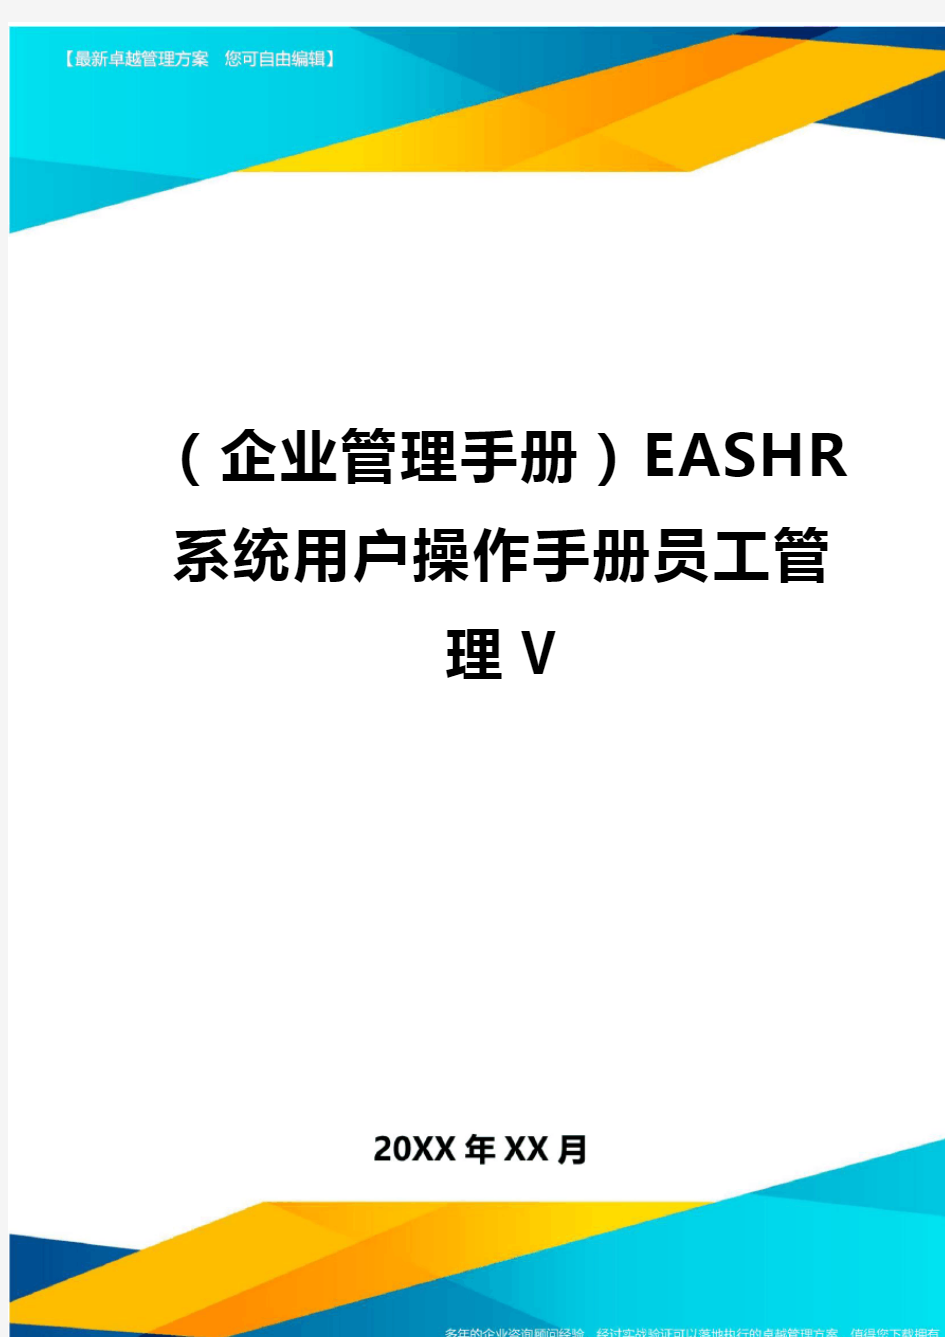 企业管理手册EASHR系统用户操作手册员工管理V